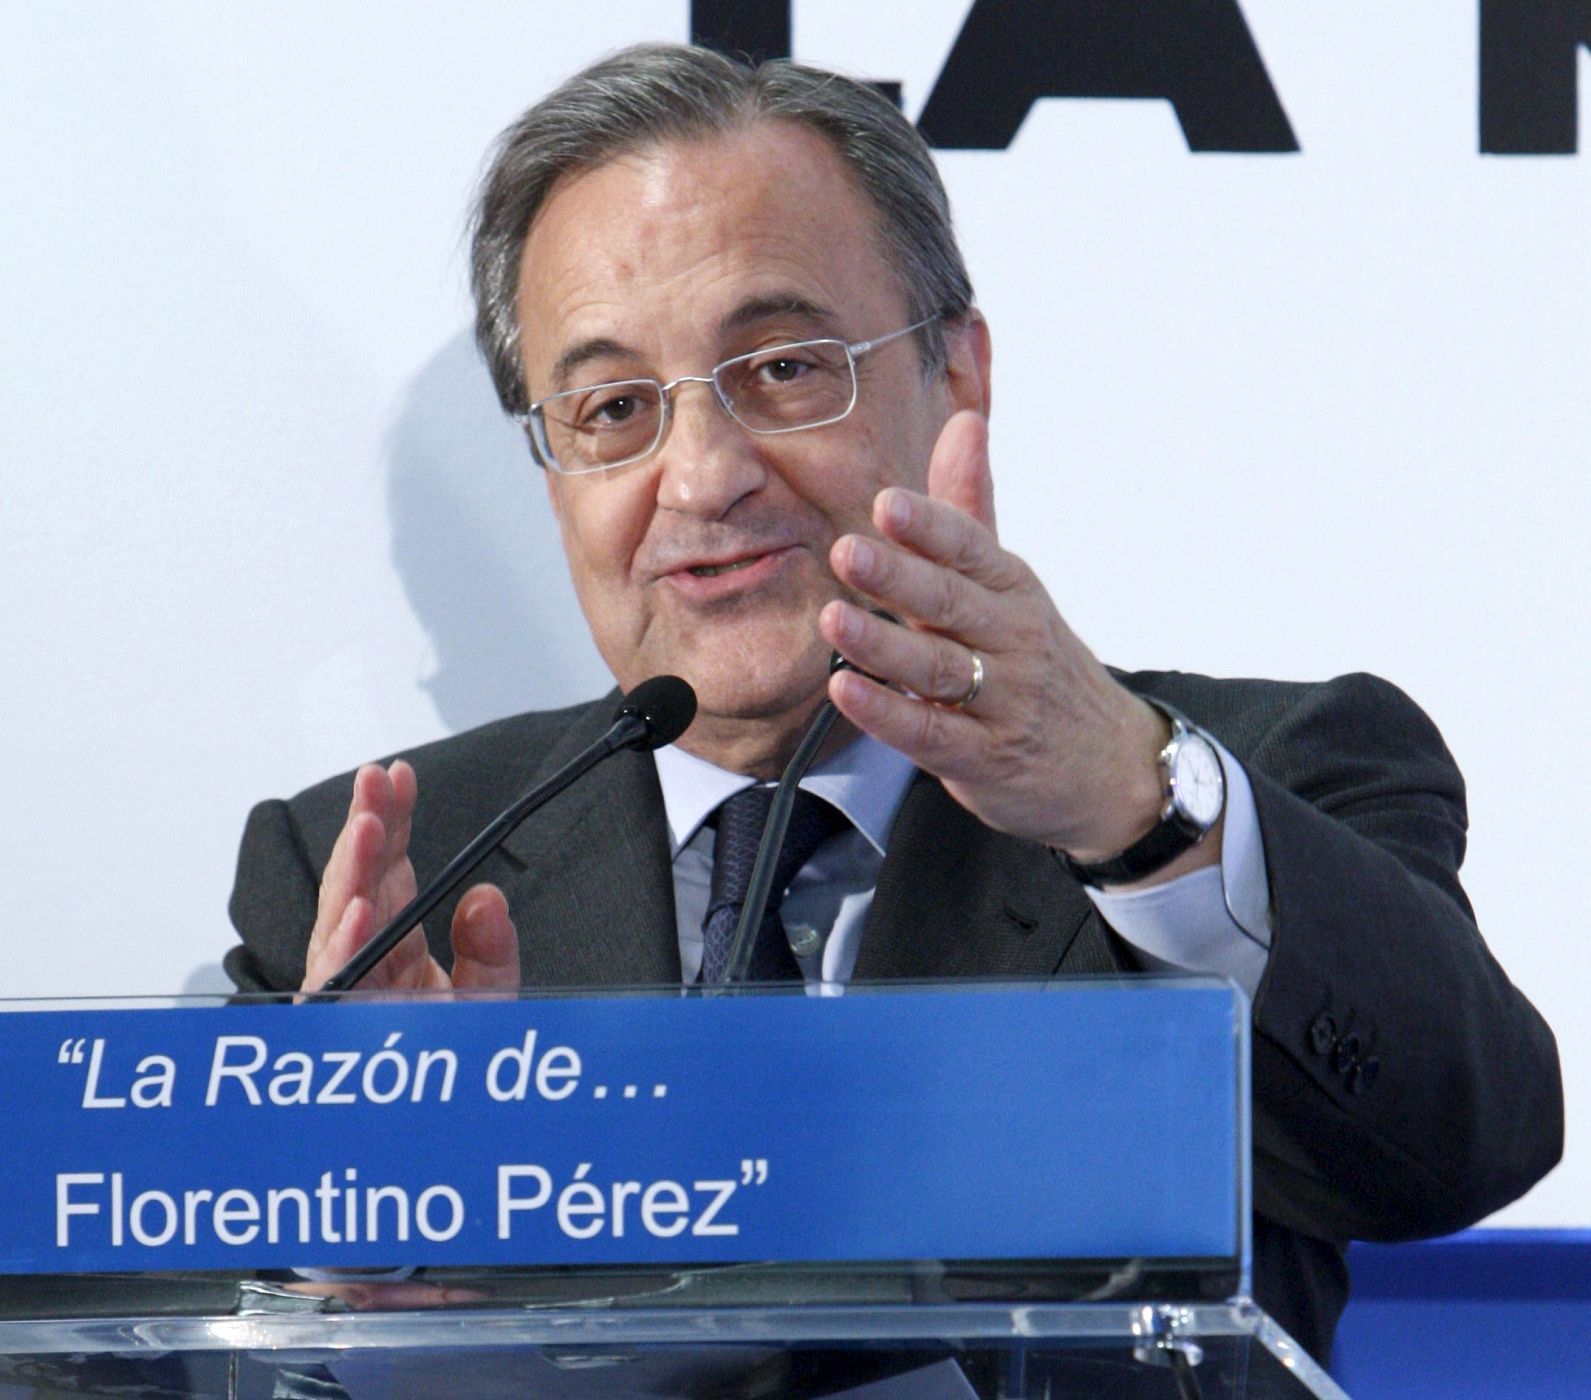 El presidente del Real Madrid, Florentino Pérez, interviene durante el acto